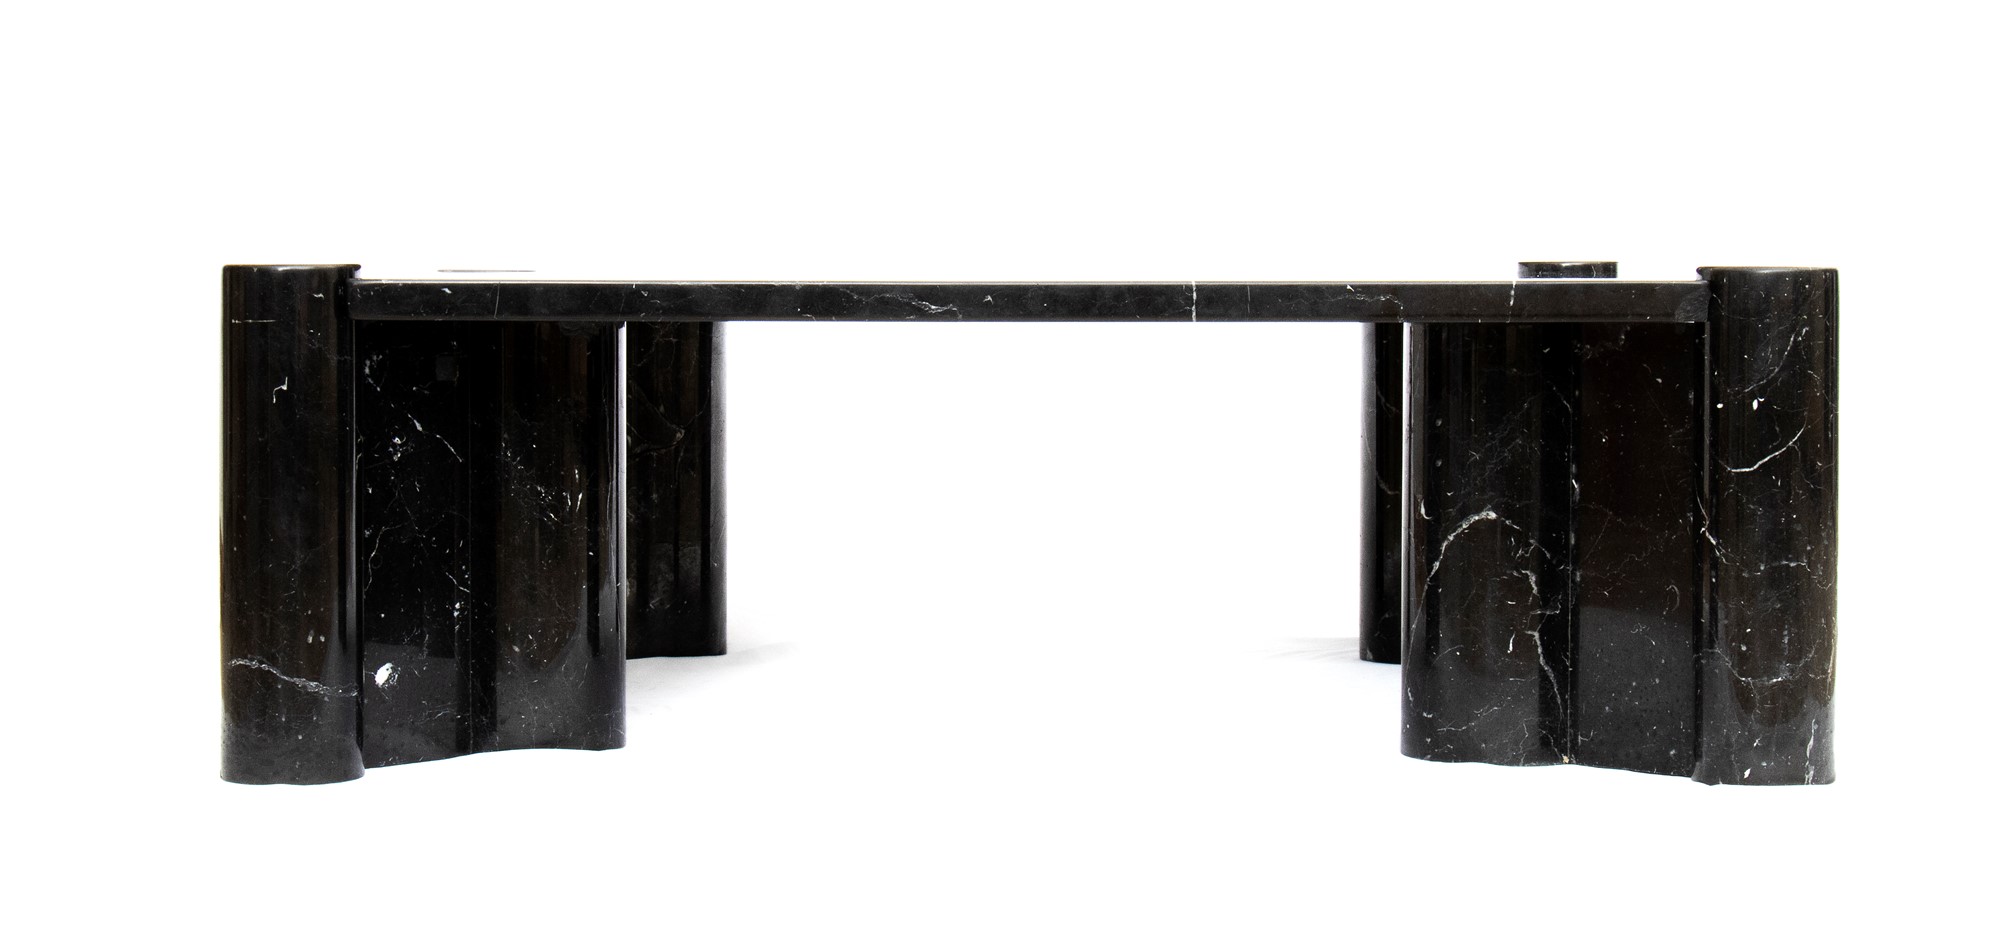 Gae Aulenti Palazzolo dello Stella 1927-Milano 2012 Living room table in black marble marquinia mod - Image 11 of 23